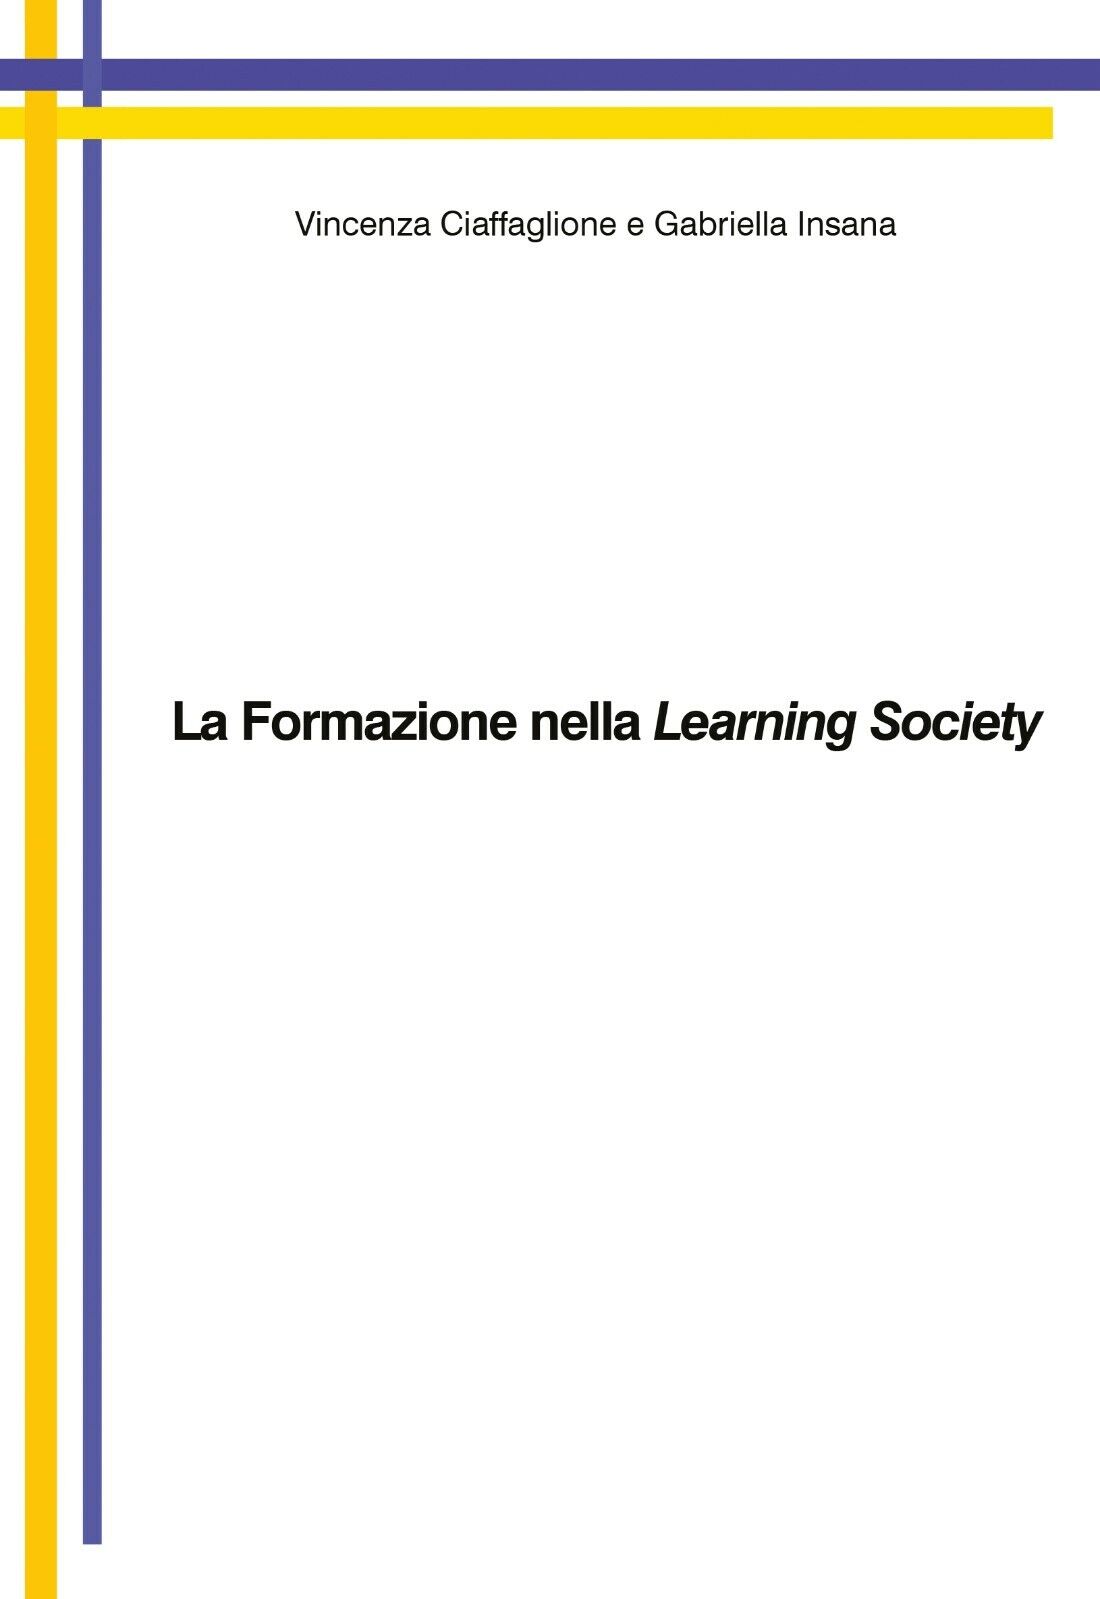 La formazione nella learning society - Ciaffaglione,Insana - P